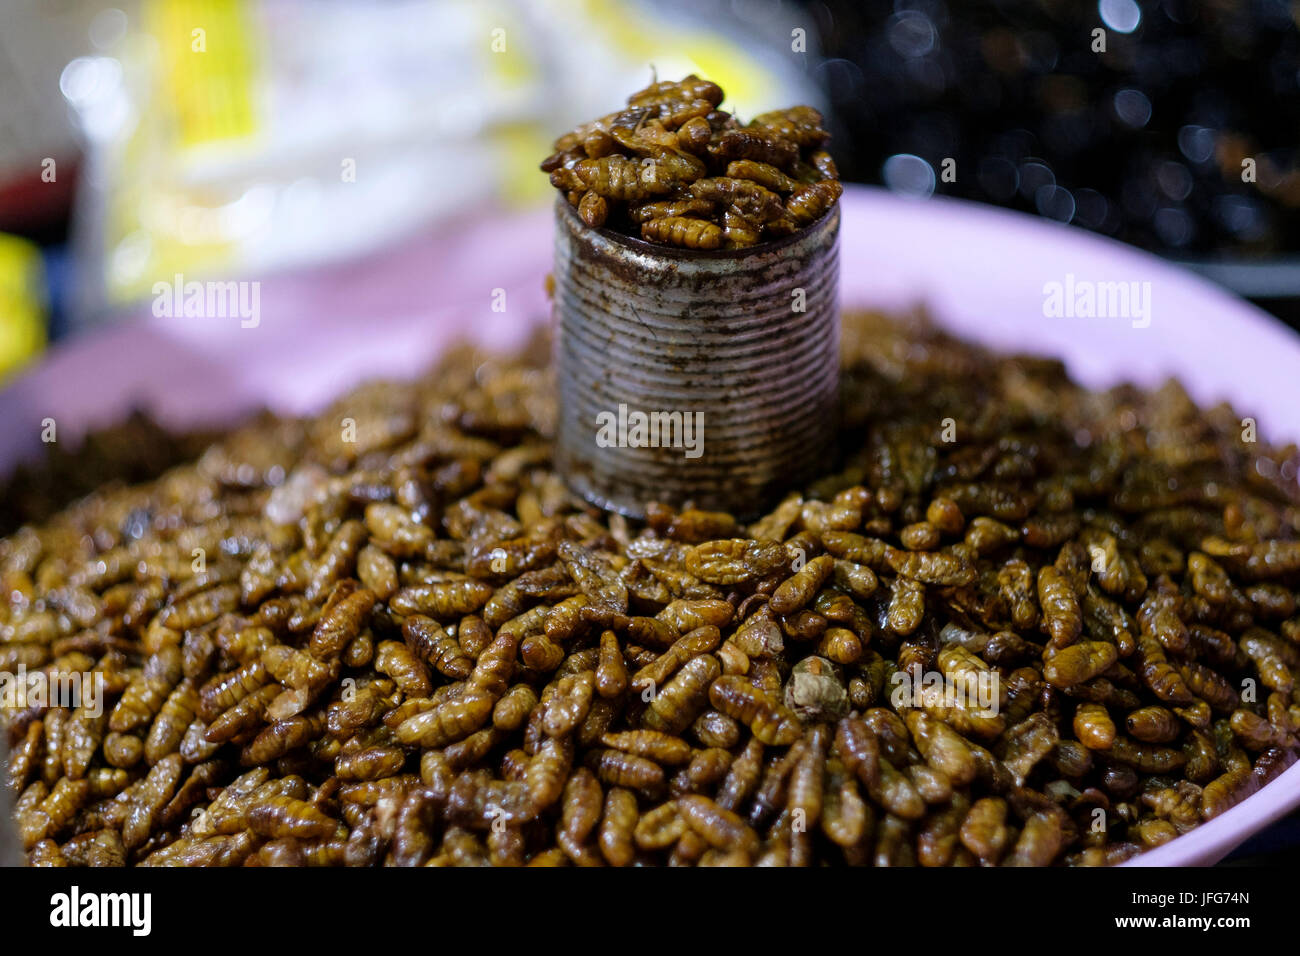 Le larve in vendita come cibo su un mercato all'aperto in Asia Foto Stock